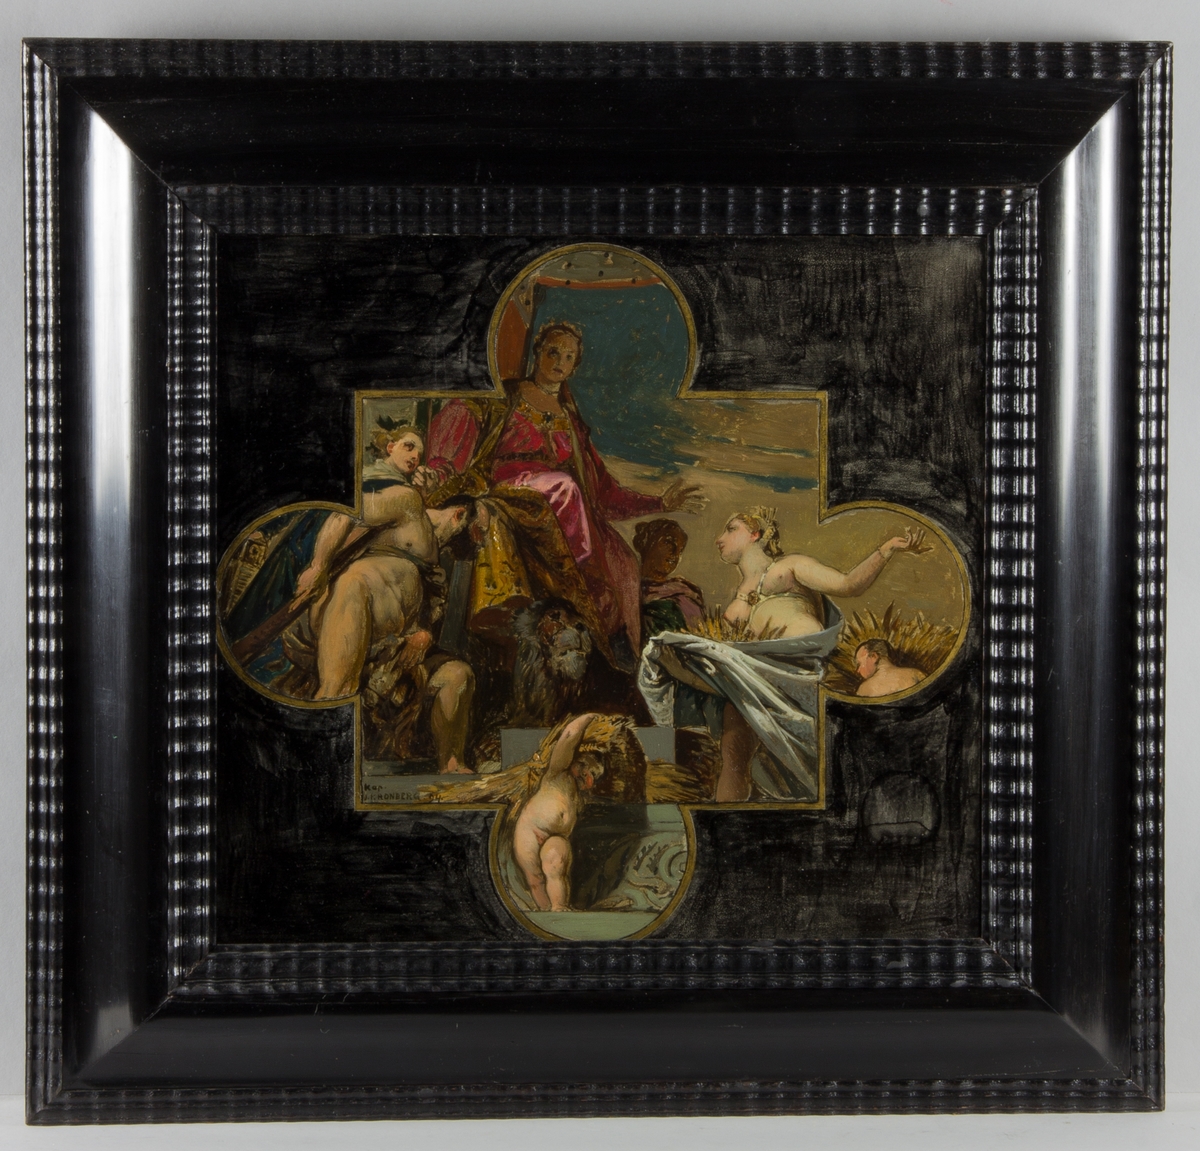 Allergorisk framställning av Venezia sittande på en tron med ett lejon vid fötterna. Hyllad av till vänster Hercules, naken, och till höger gudinnan Ceres.